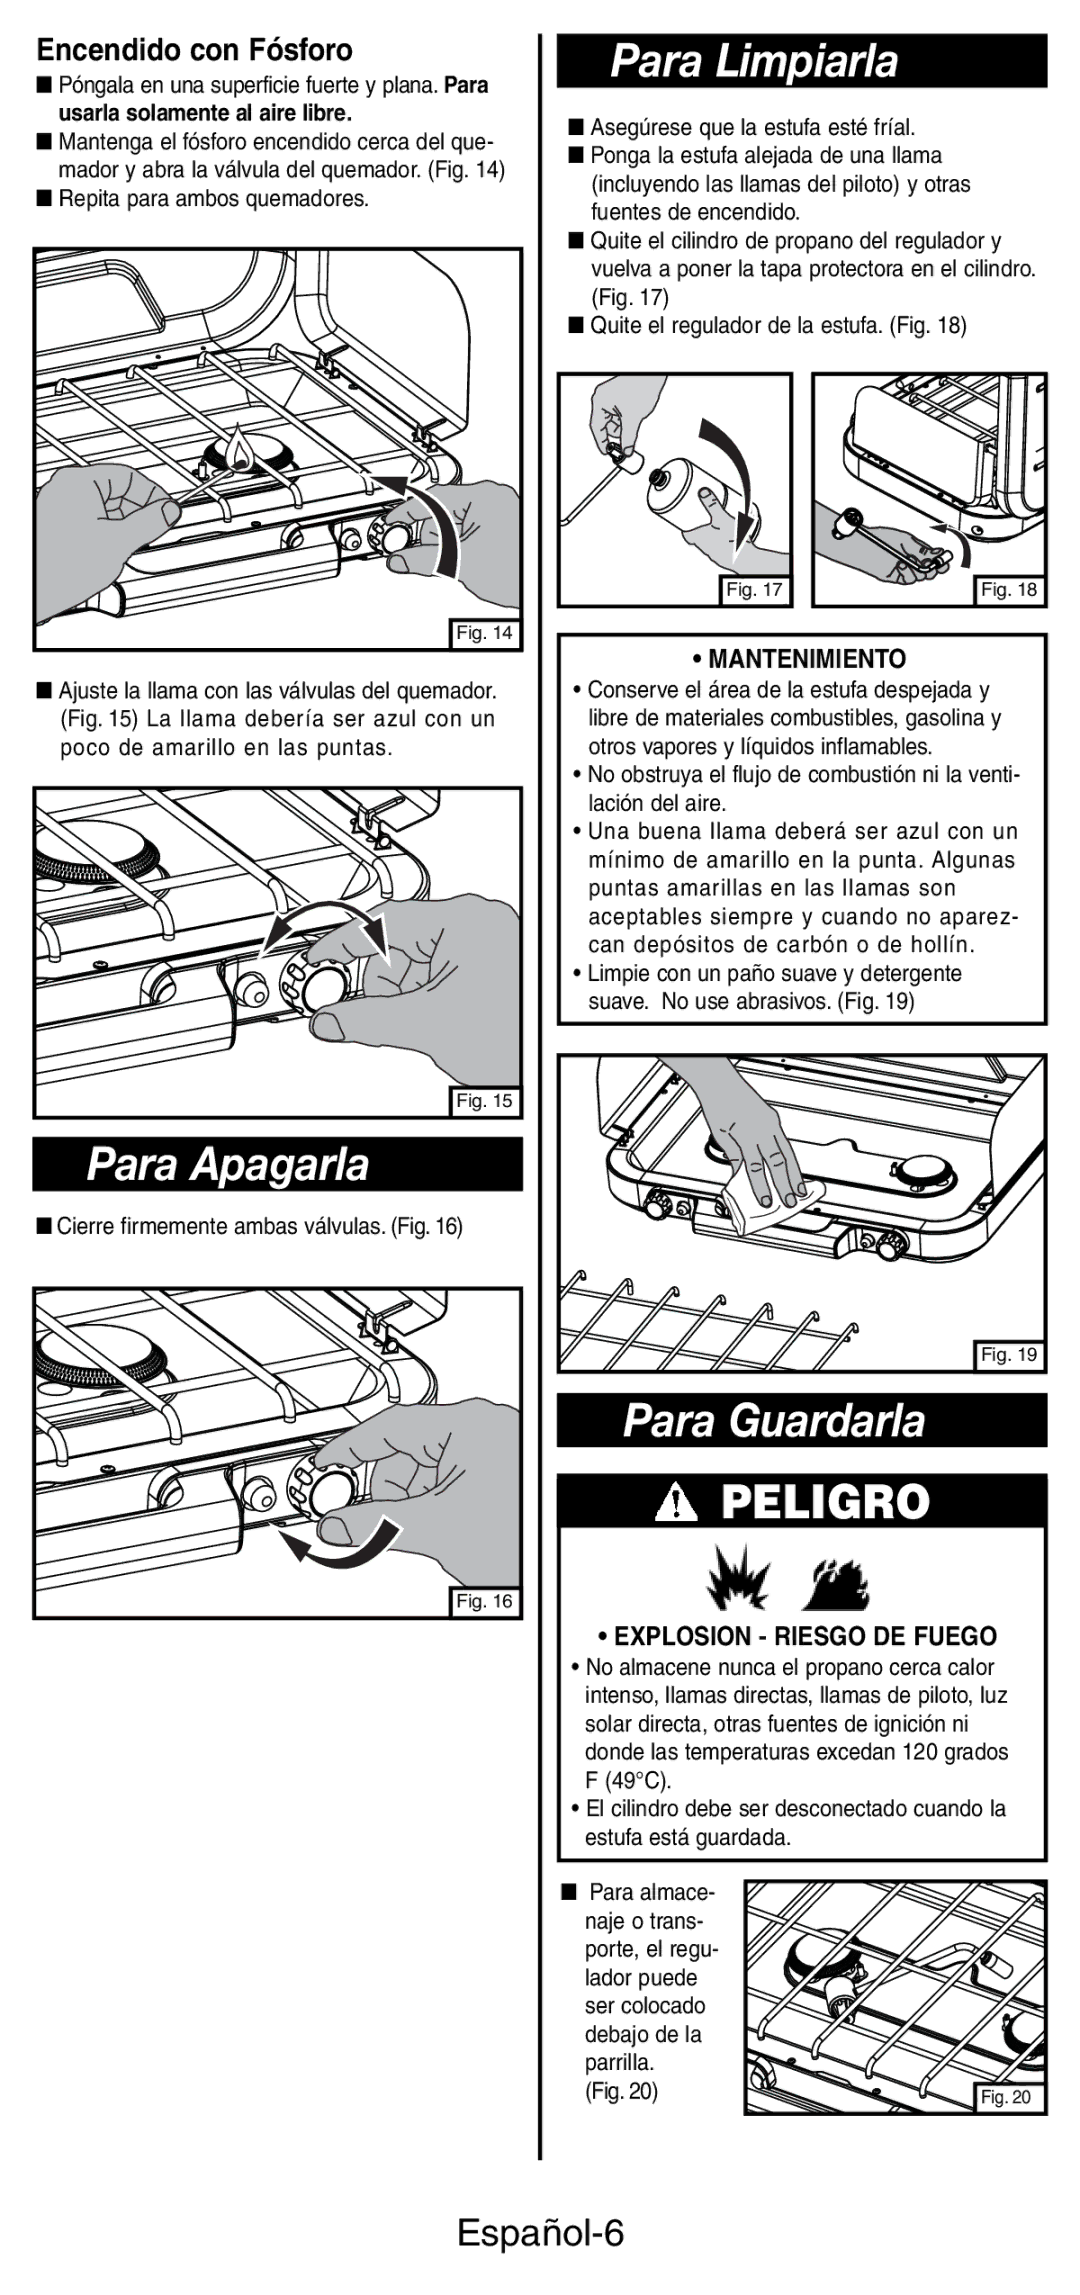 Coleman 5441 Series manual Para Limpiarla, Para Apagarla, Para Guardarla, Español-6, Encendido con Fósforo 